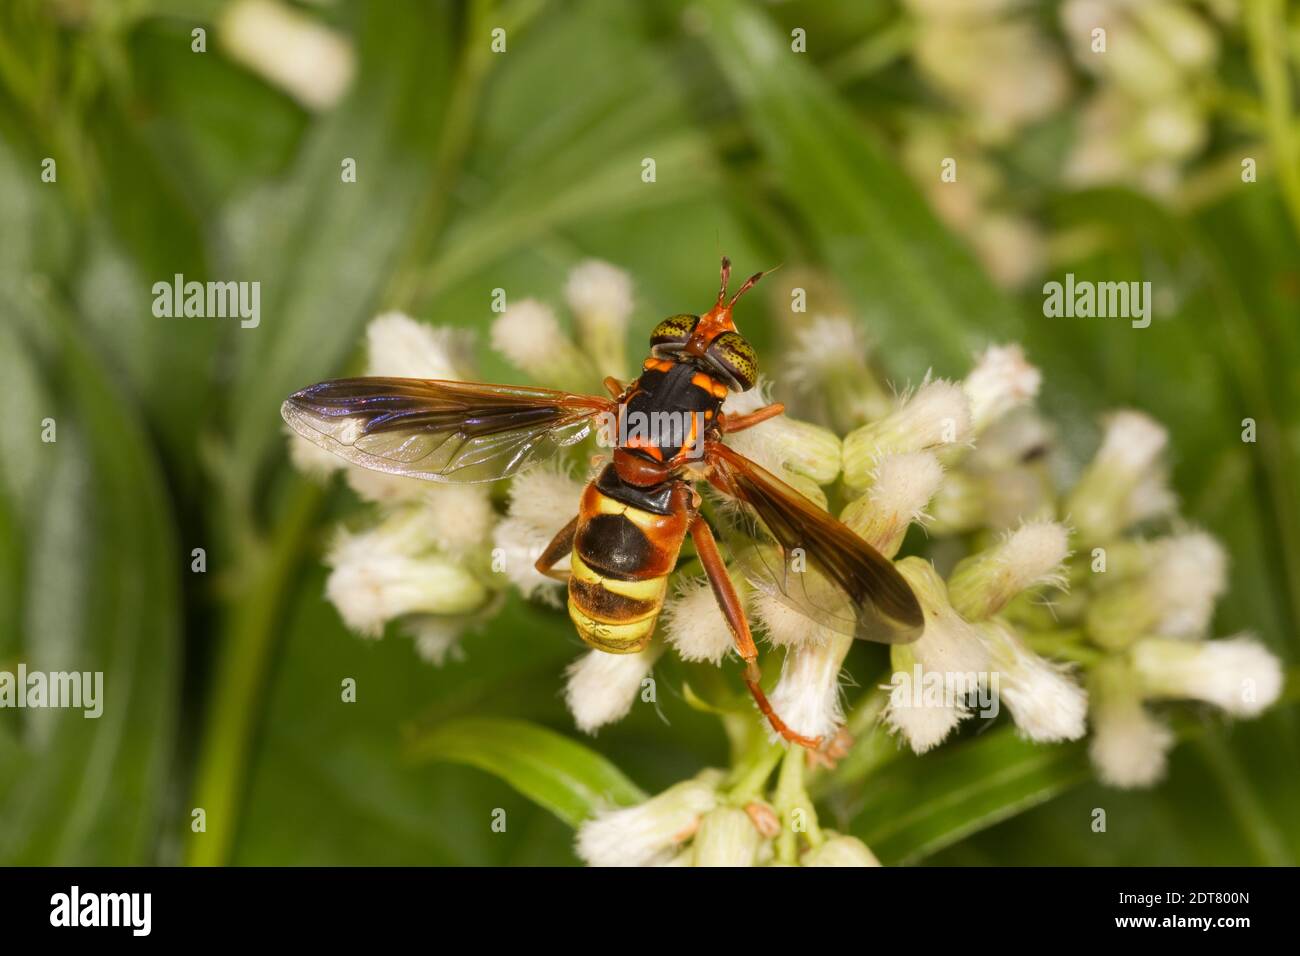 Syrphide Fly femelle, Spilomyia kahli, Syrphidés. Longueur du corps 15 mm. Nectaring à Mule-FAT, Baccharis salcifolia, Asteraceae. Schéma Wasp. Banque D'Images